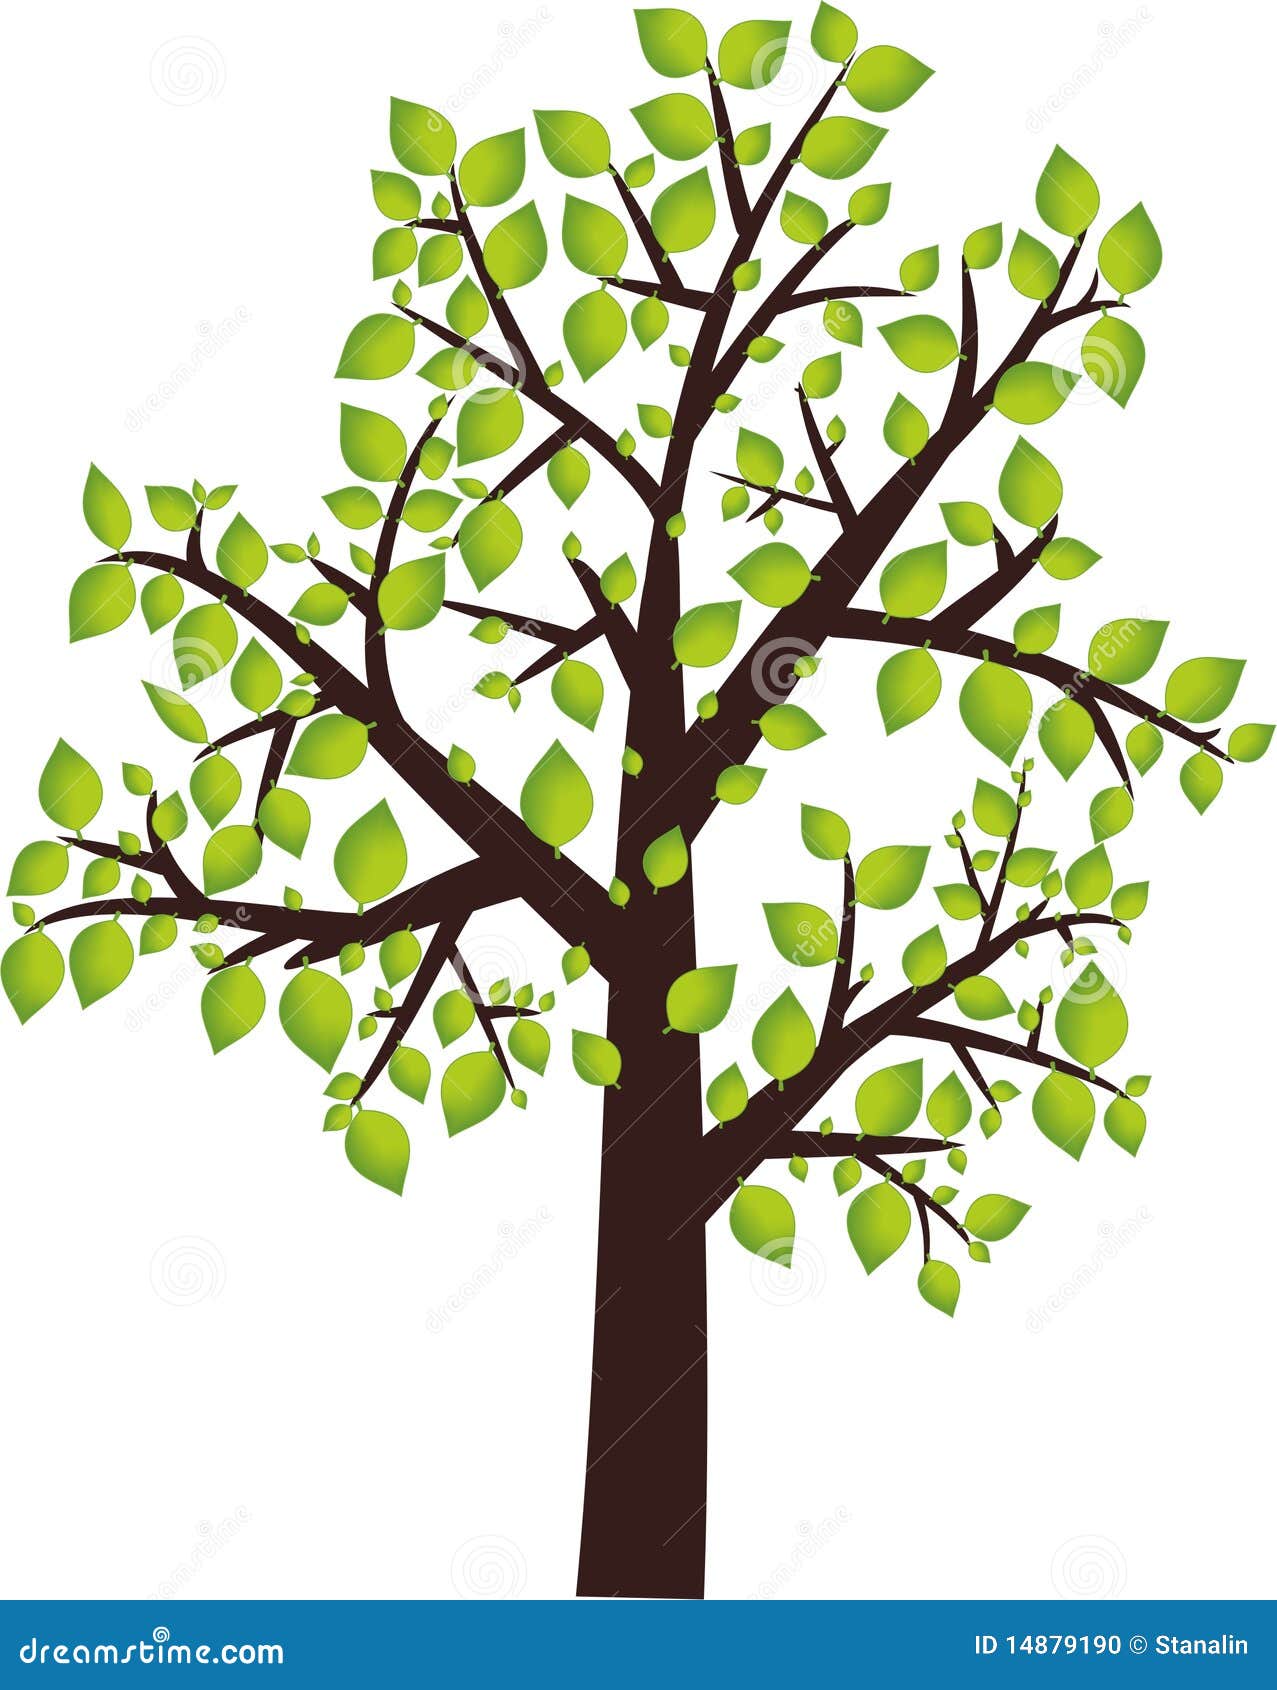  Graphisme  d arbre illustration stock Illustration du 